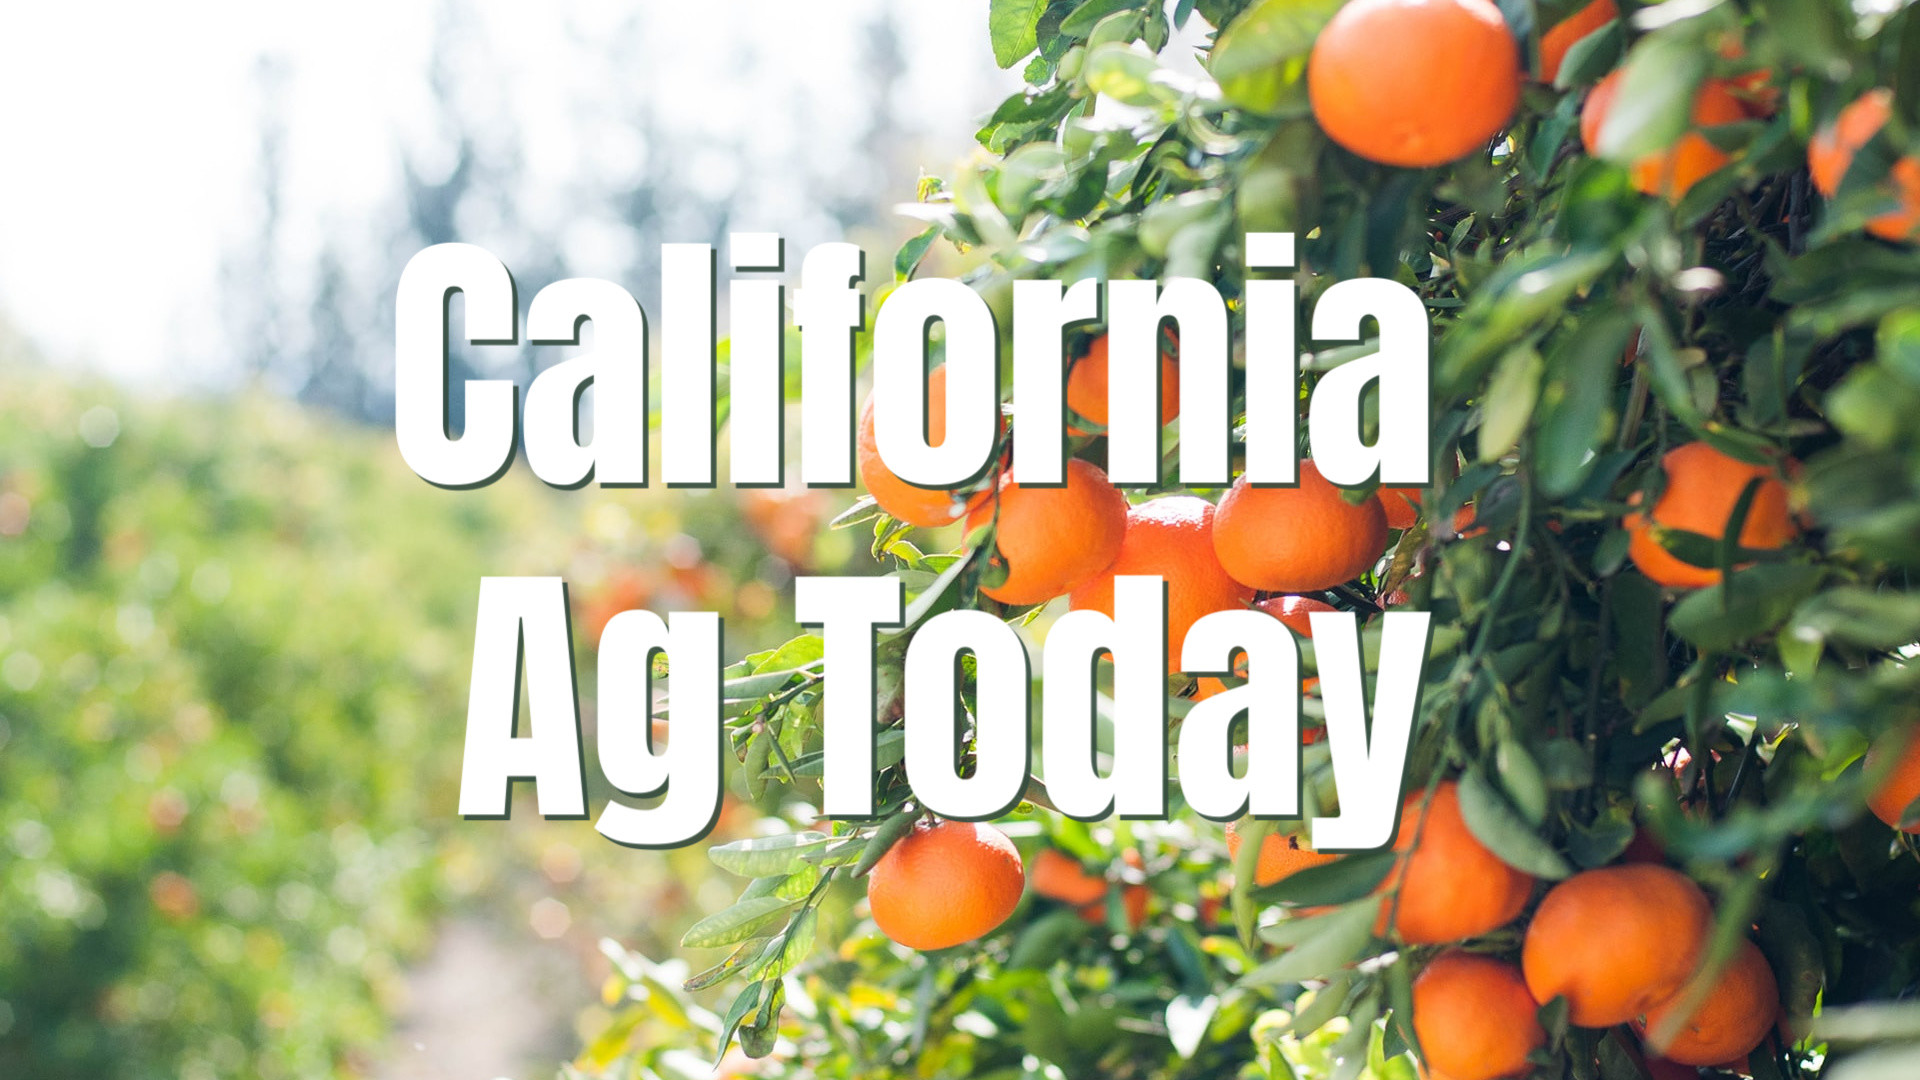 AFBF wants CA Producer Input on Next Farm Bill